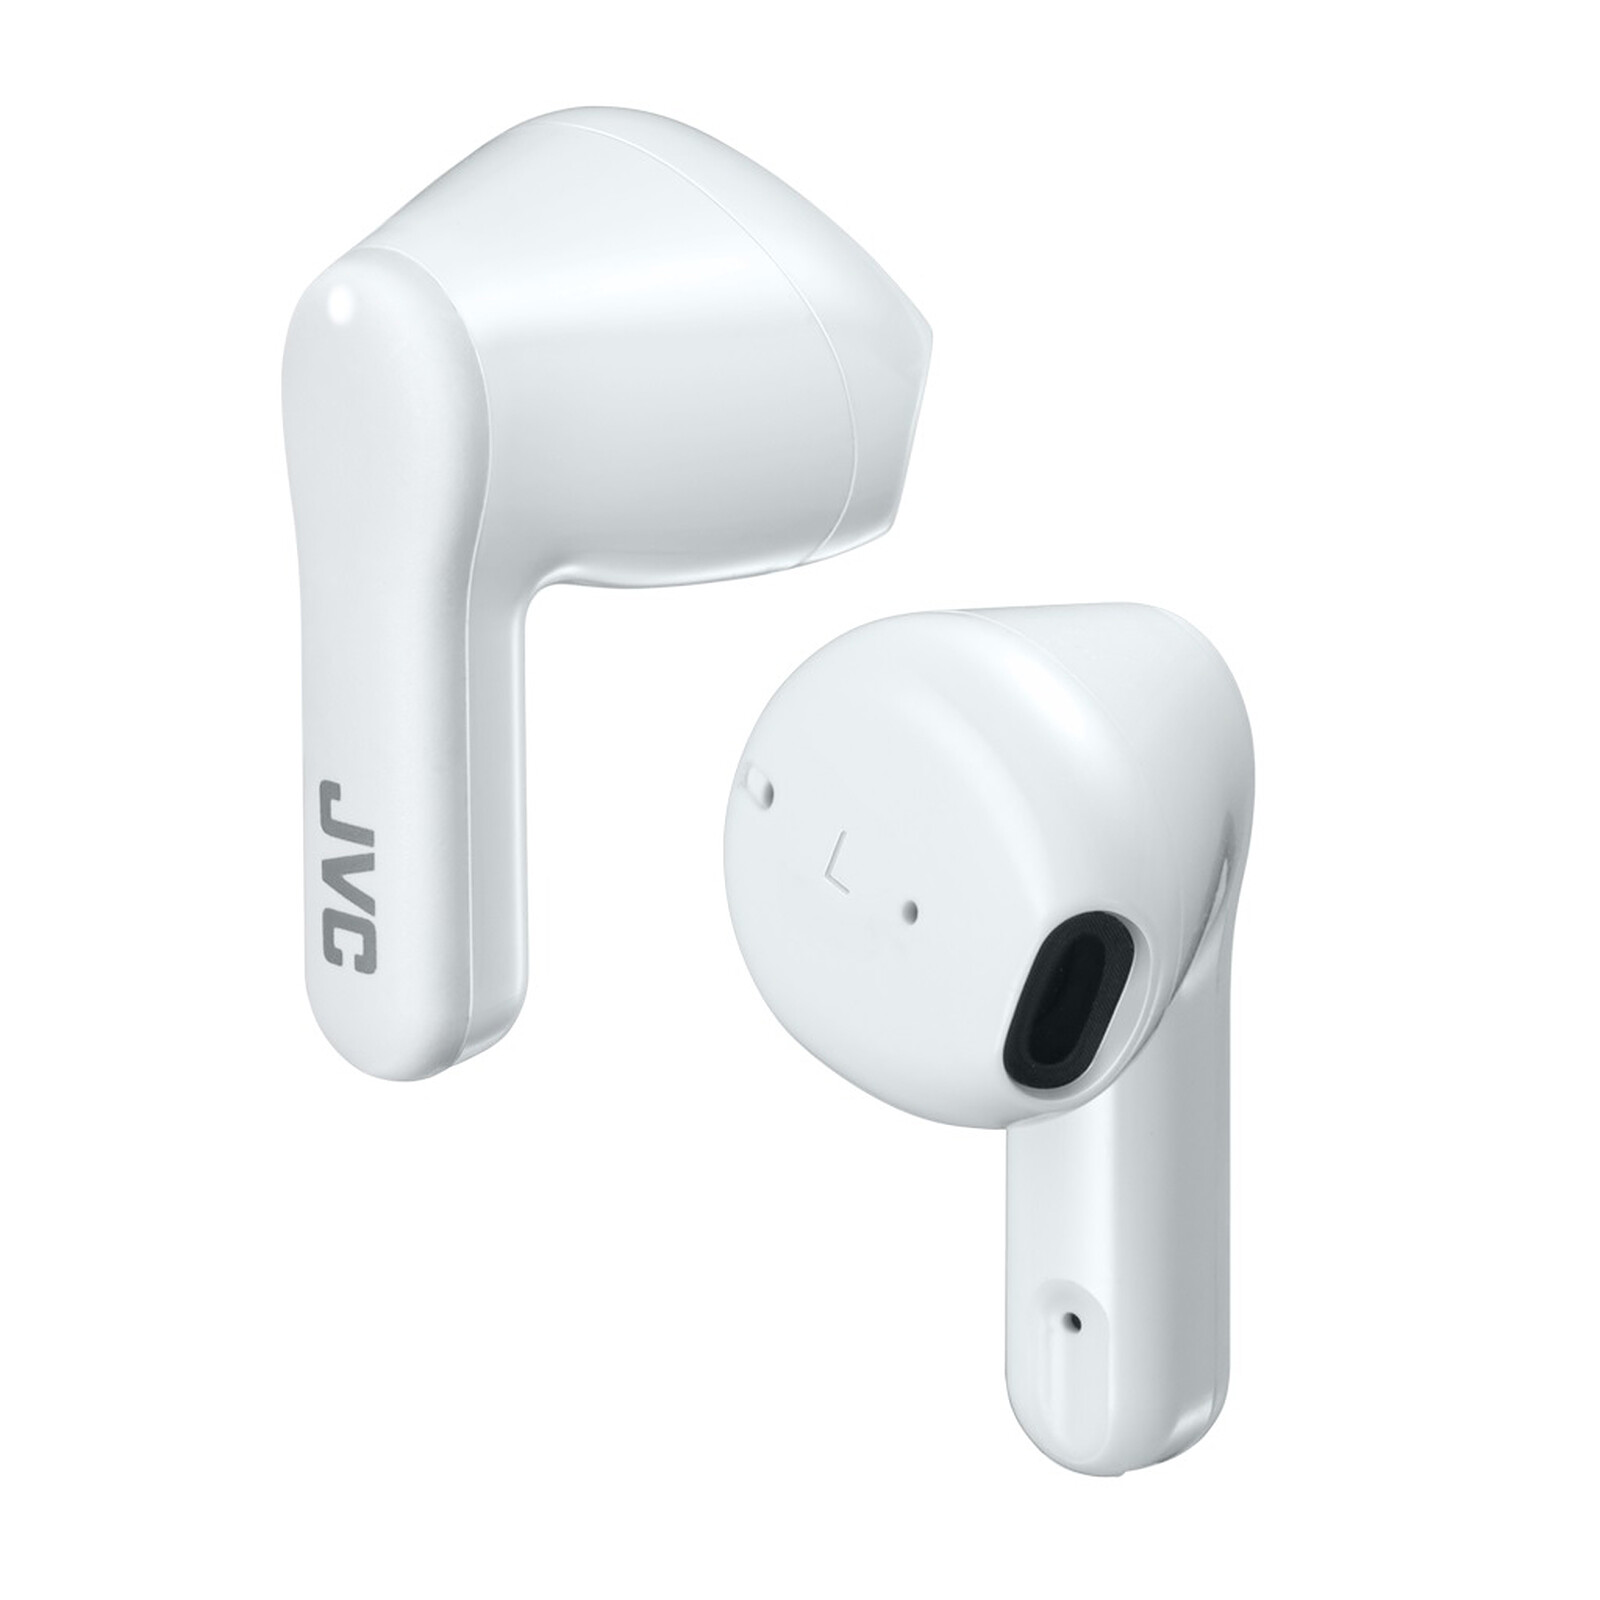 Apple EarPods Jack 3.5 mm - Casque - Garantie 3 ans LDLC